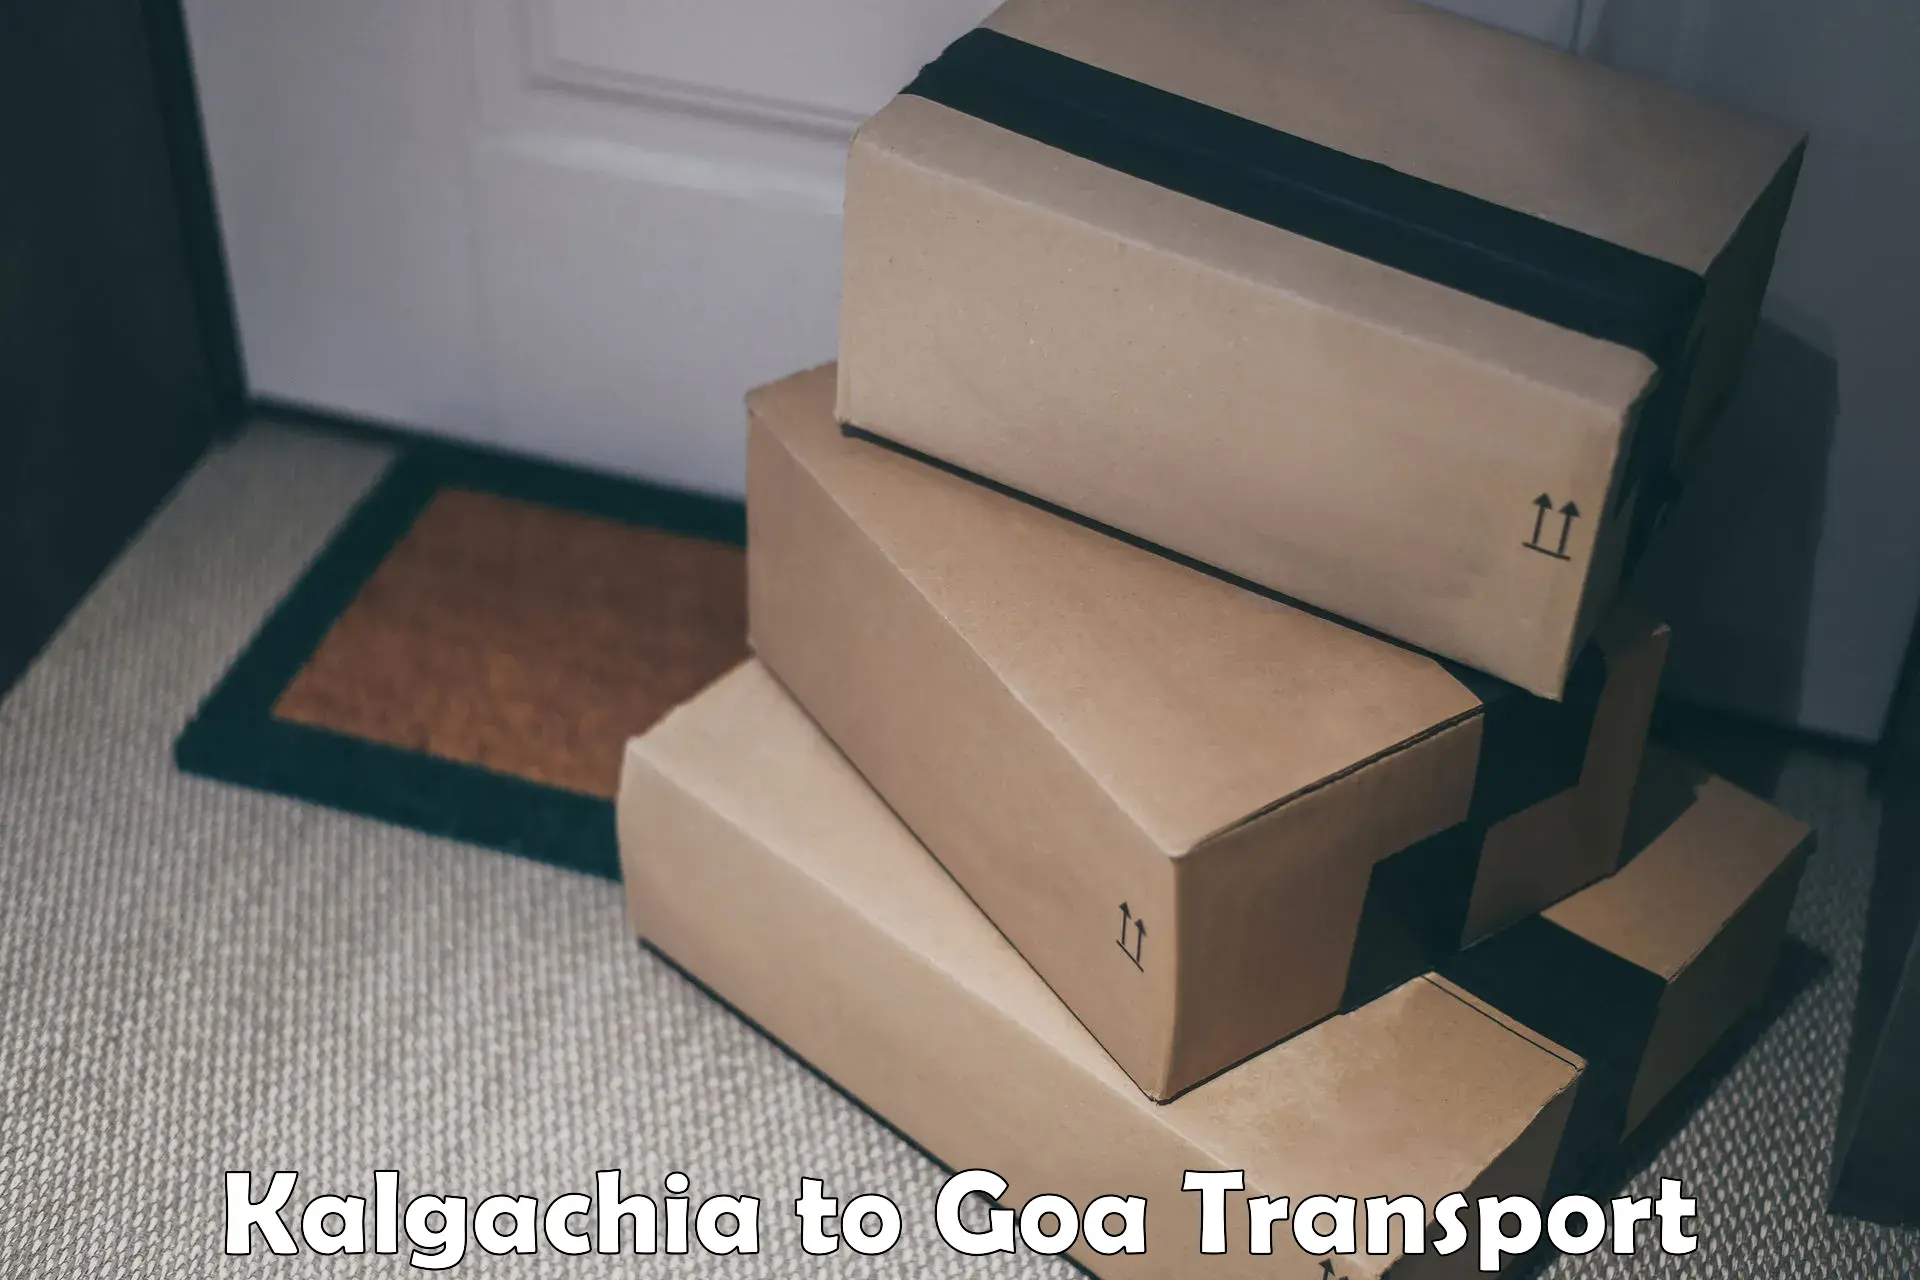 Nearby transport service Kalgachia to Bardez